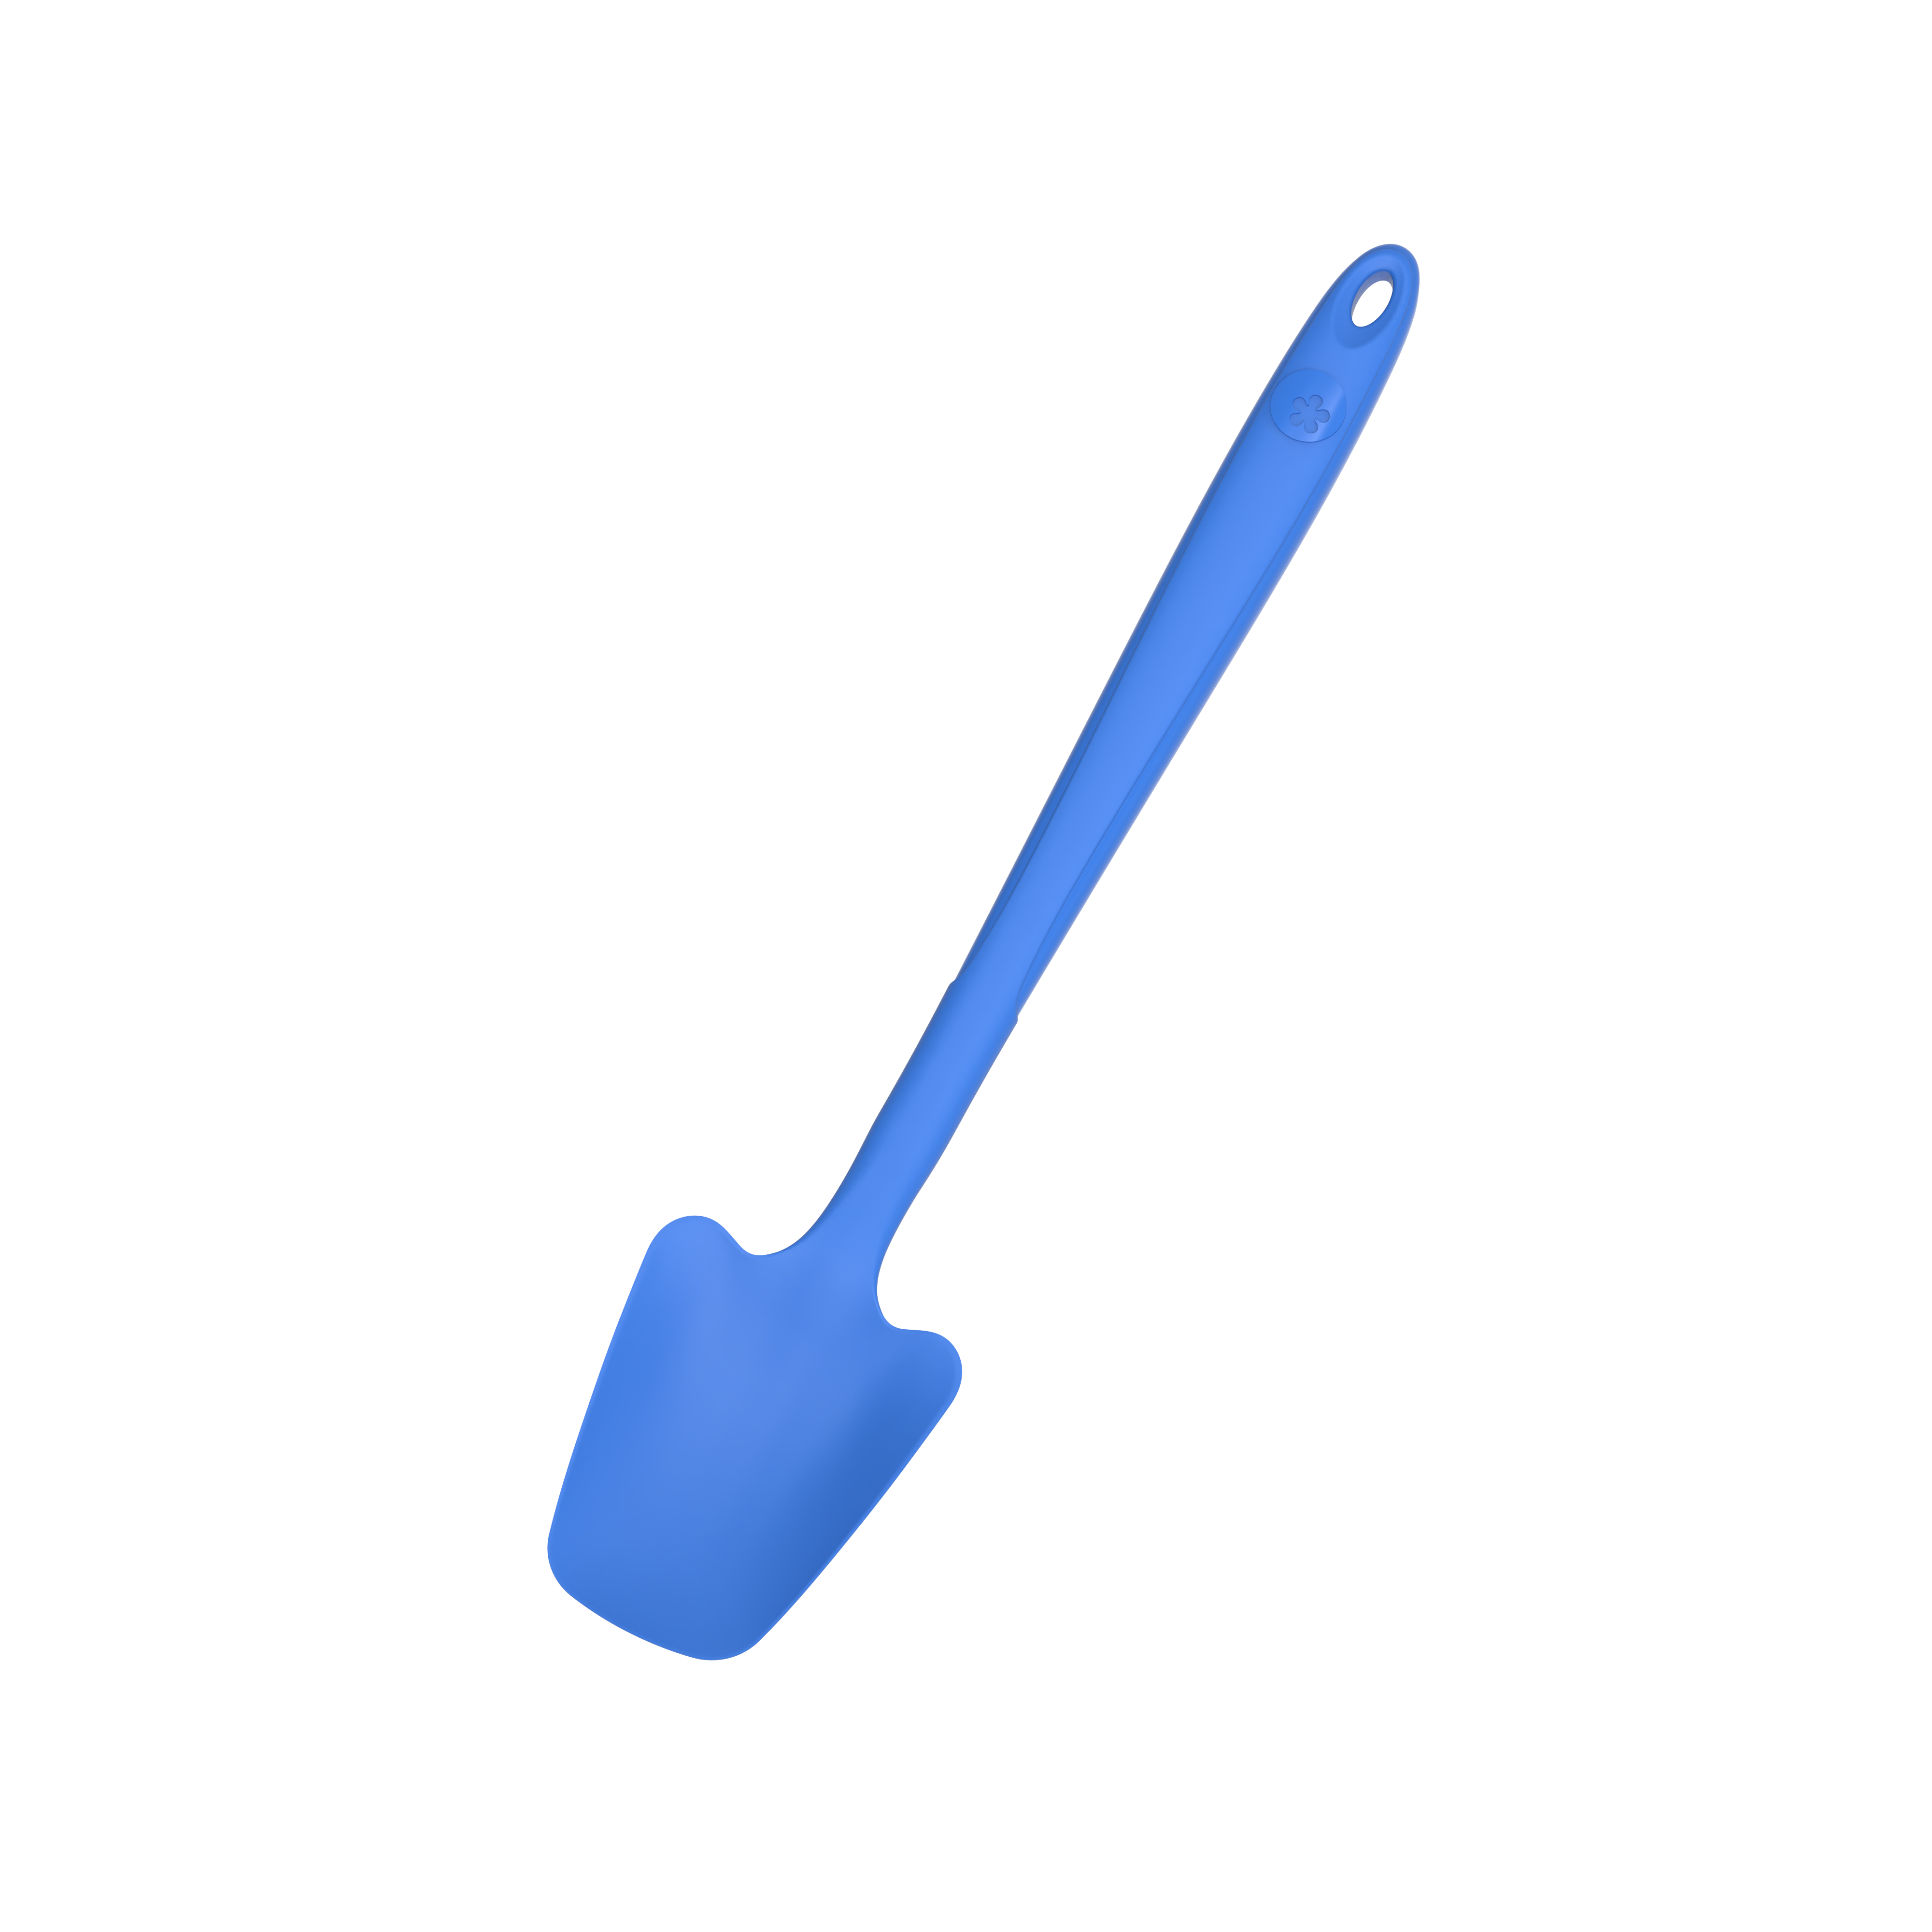 Blauer Silikon-Kochlöffel auf transparentem Hintergrund